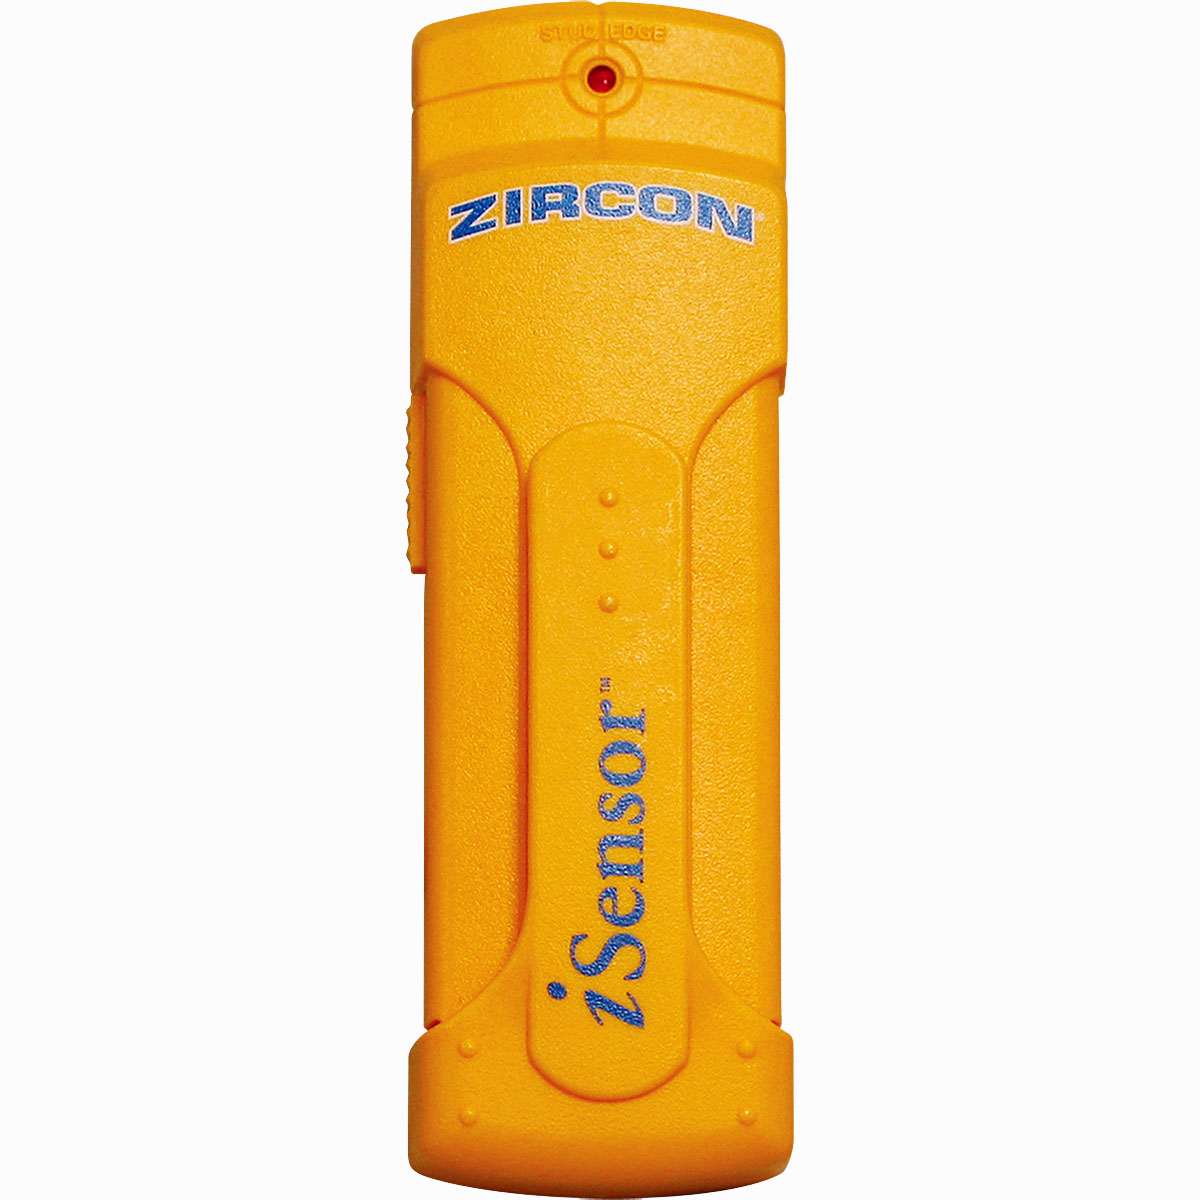 Zircon iSensor